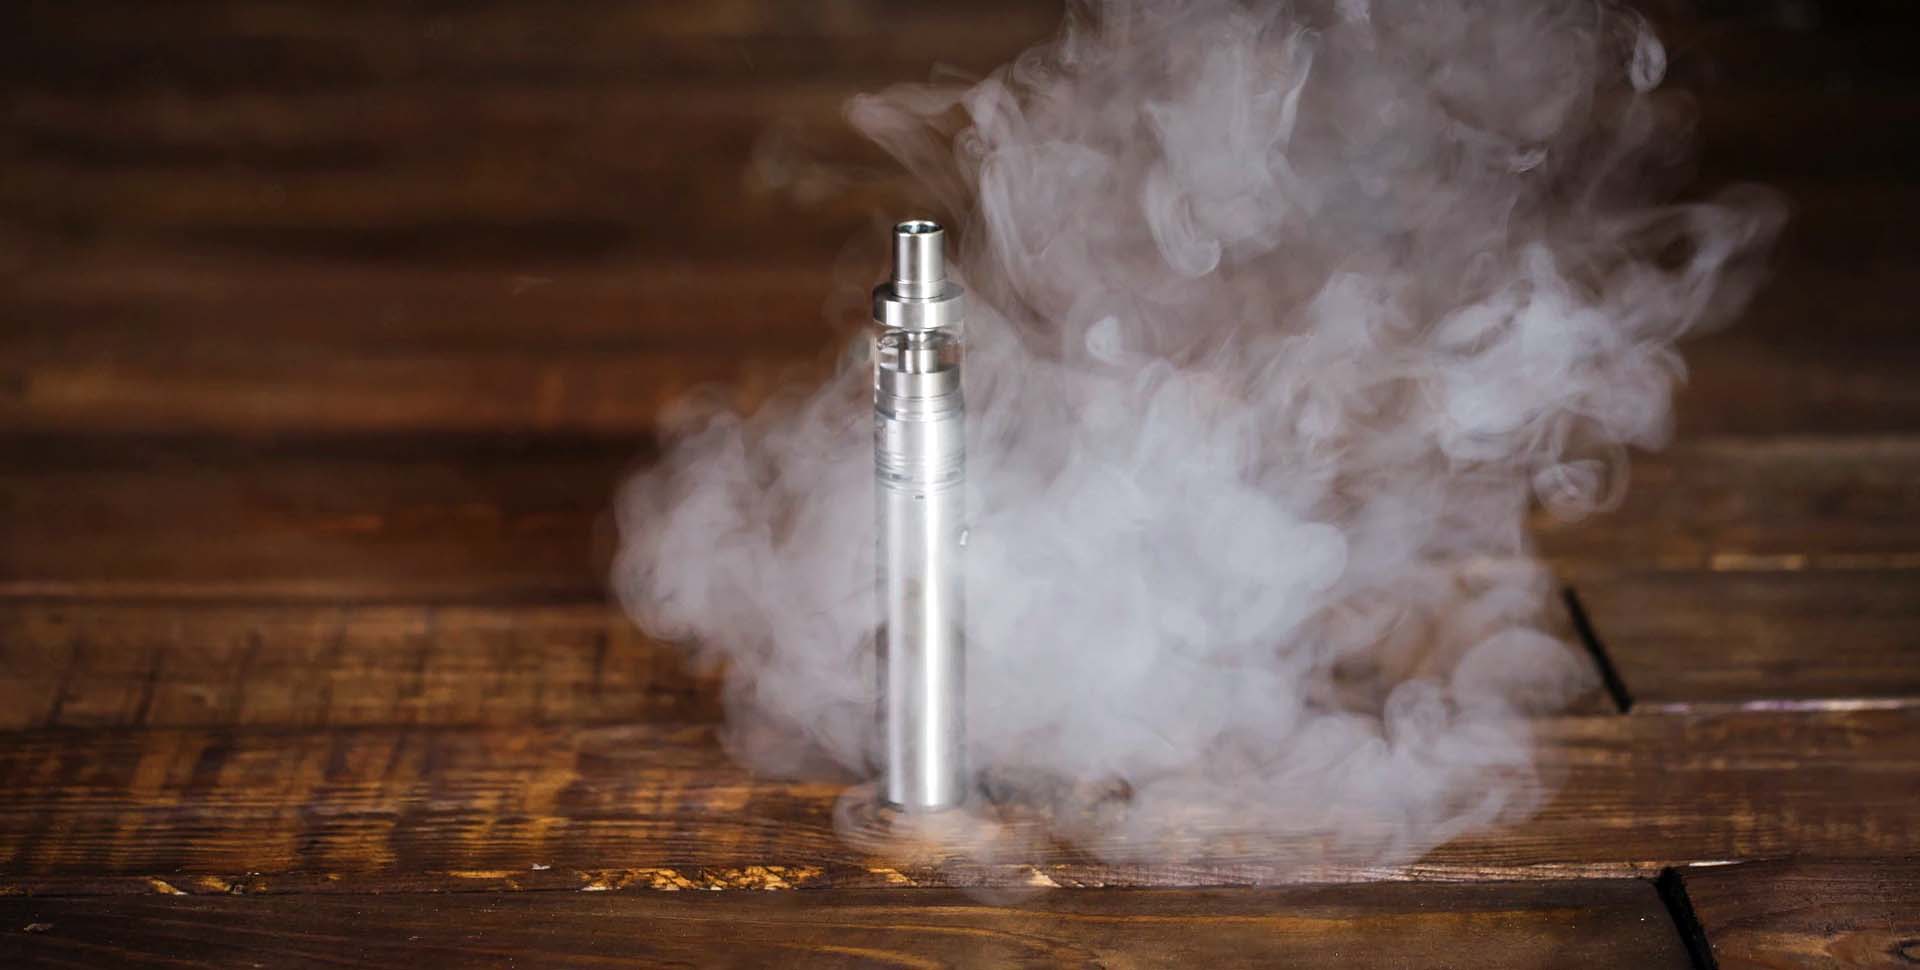 Elektronická cigareta / vaporizér položený na drevenom stole a obklopený dymom